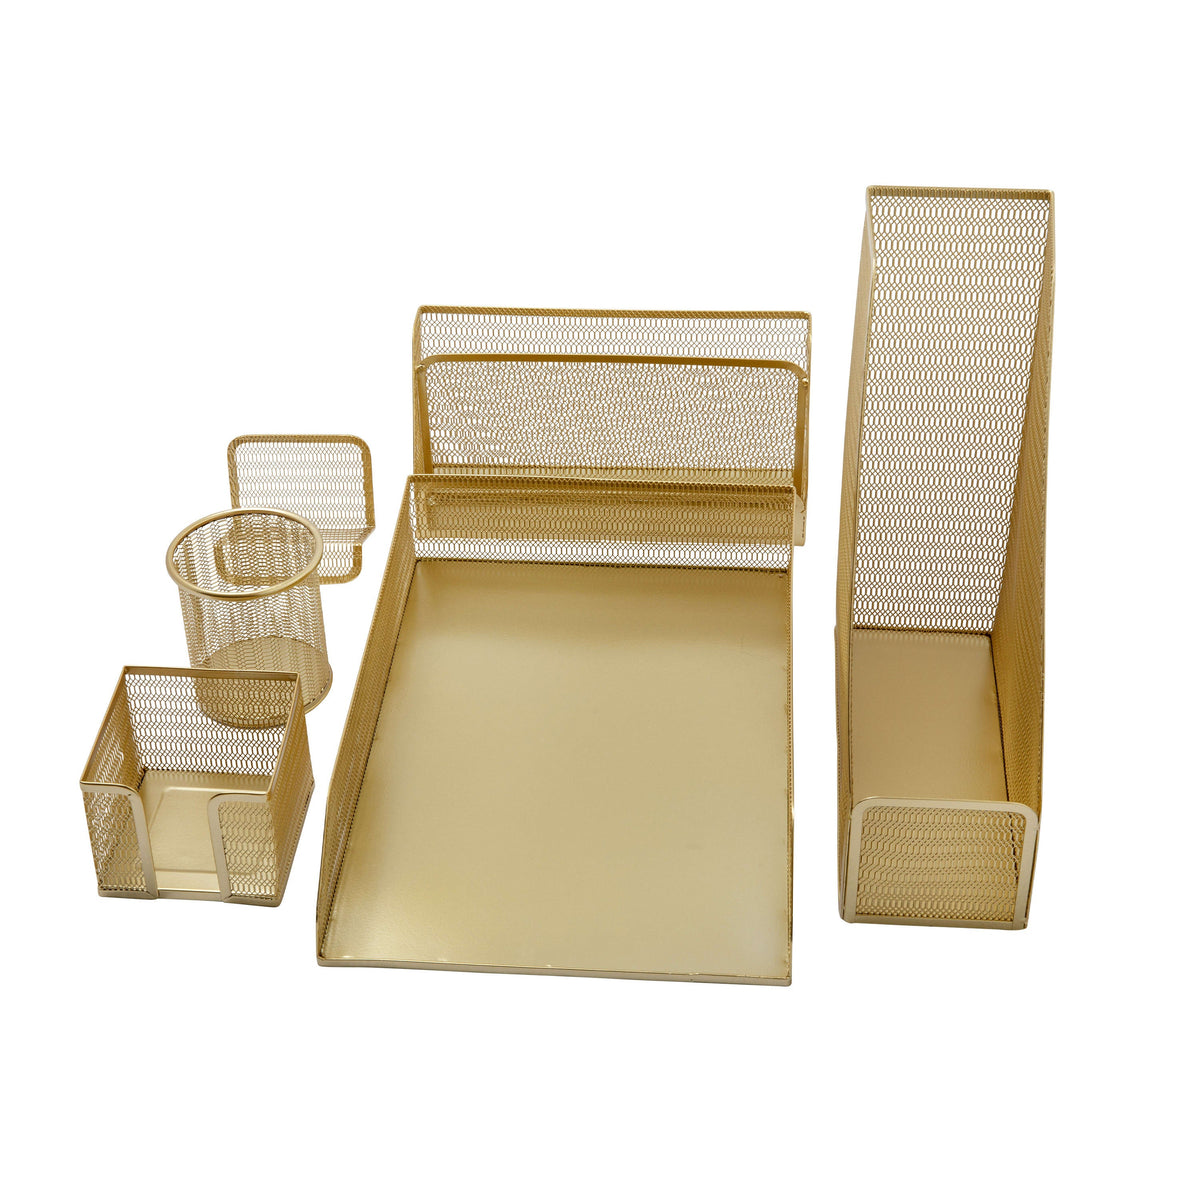 Premium 6 Piece Mesh Metal Desktop Office Supplies Organizer Set in Gold